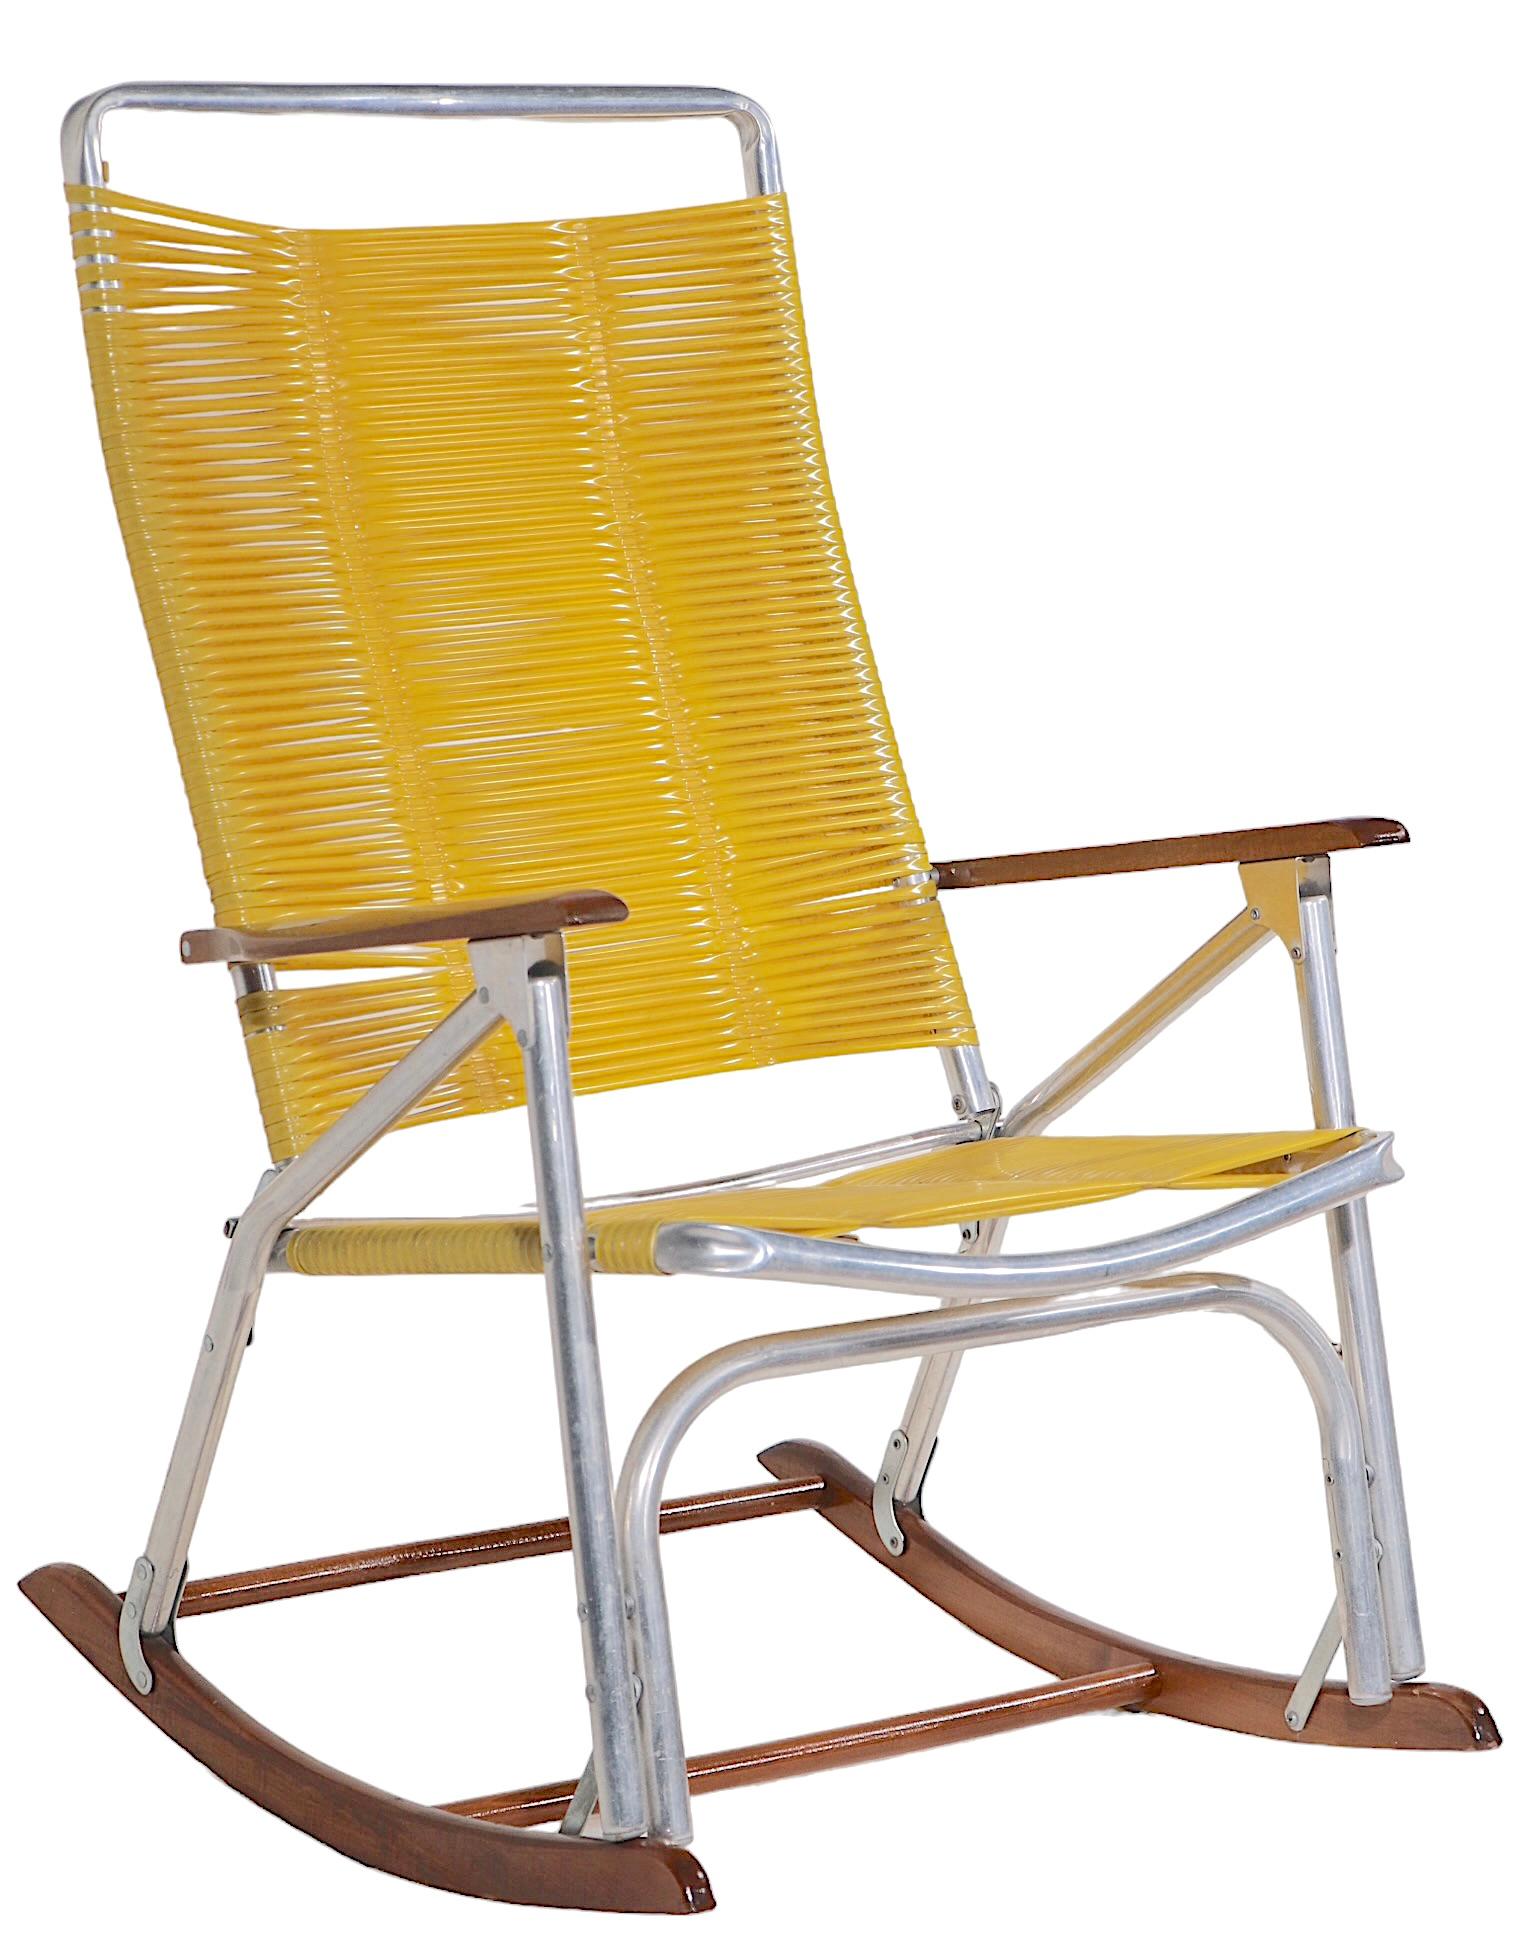 Chic Mid Century  Fauteuil à bascule vintage pour patio, piscine, fabriqué par la Telescope Chair Company, circa 1950/1970's. La chaise est dotée d'un  Dossier et siège à sangles en plastique jaune vif, accoudoirs et bascules en bois, avec un cadre